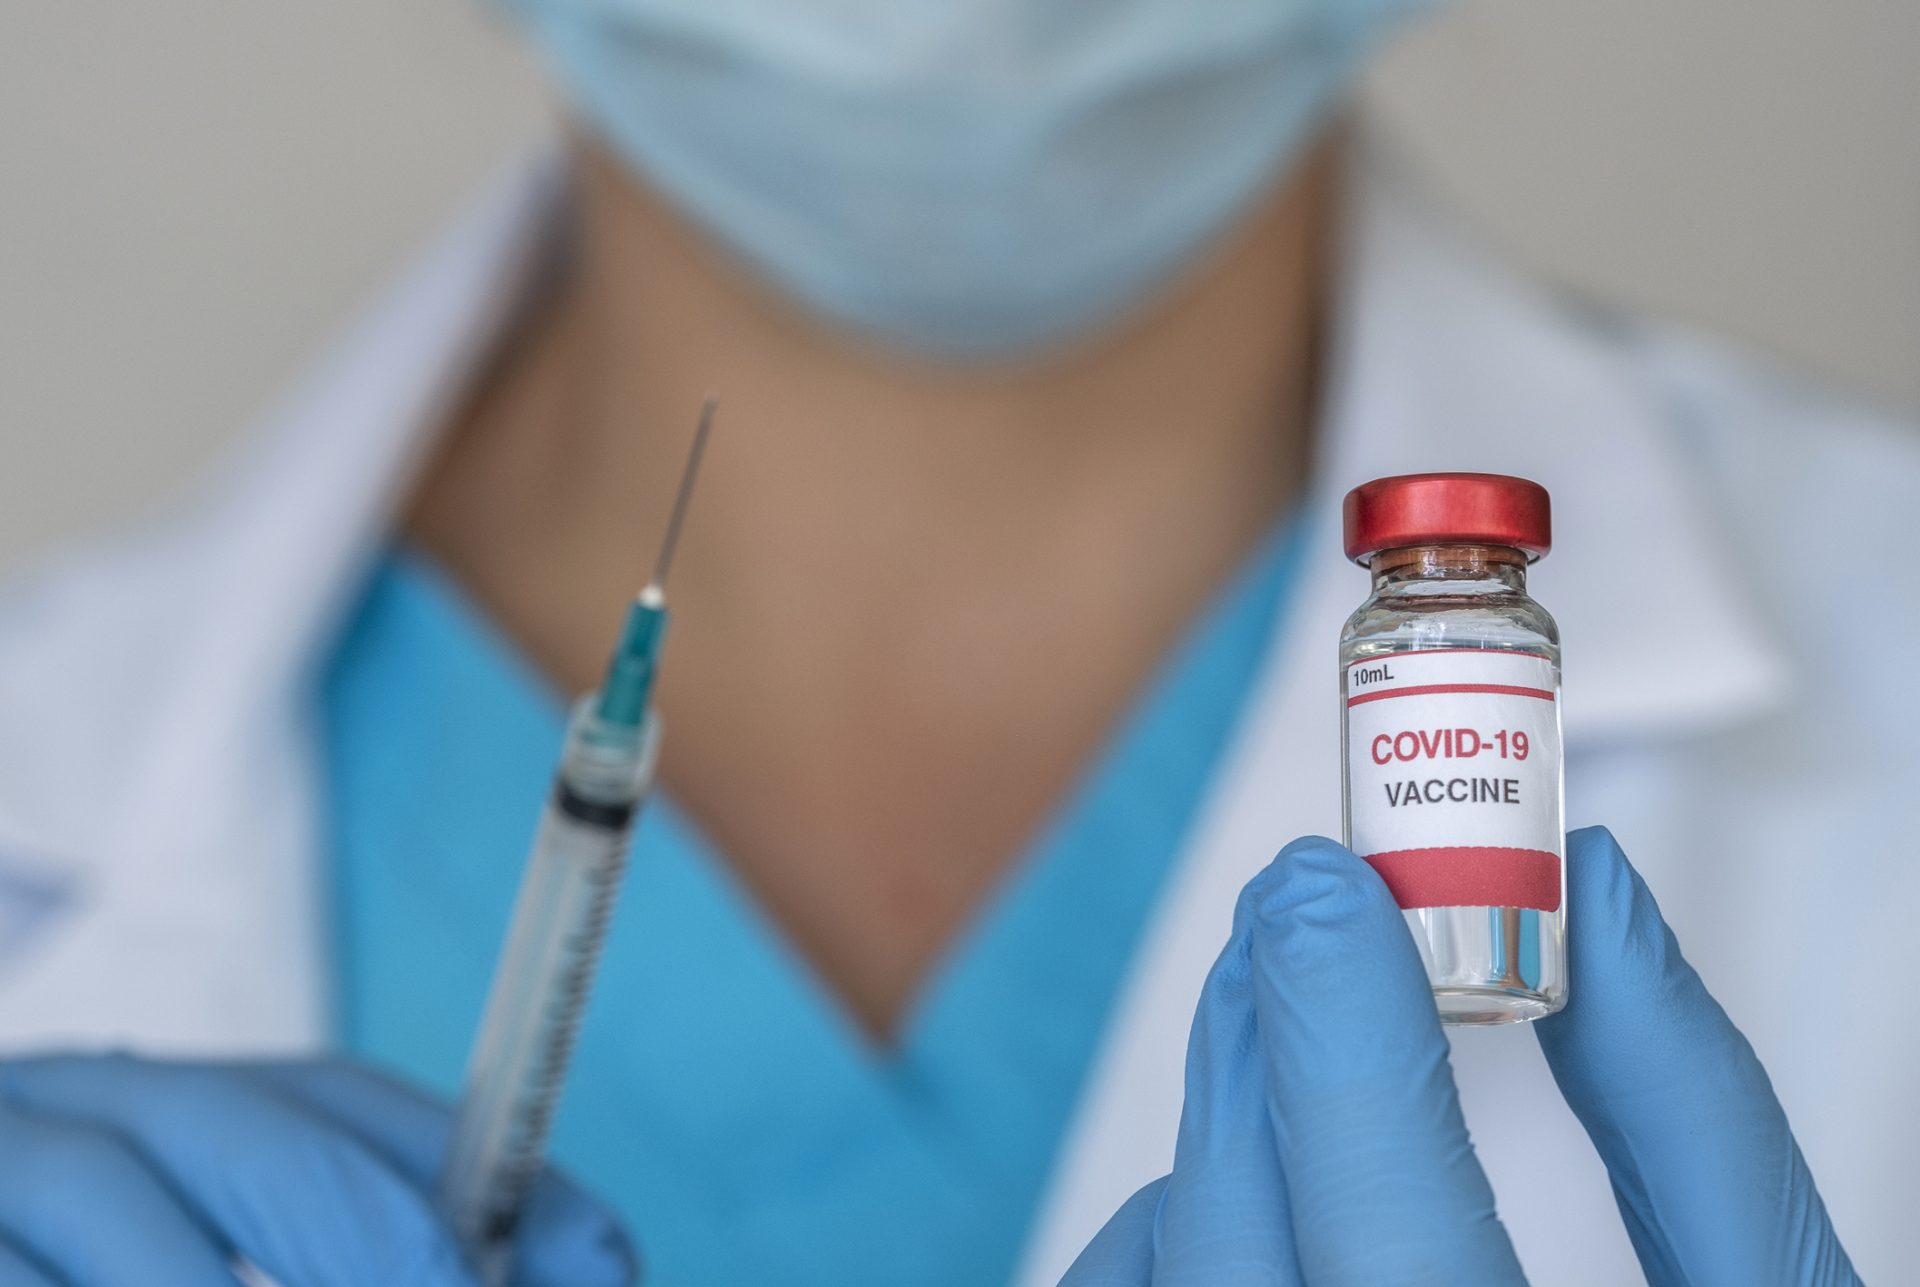 Patru mituri despre vaccinul COVID, explicate. Realizarea serului a fost grăbită? Poate modifica ADN-ul?